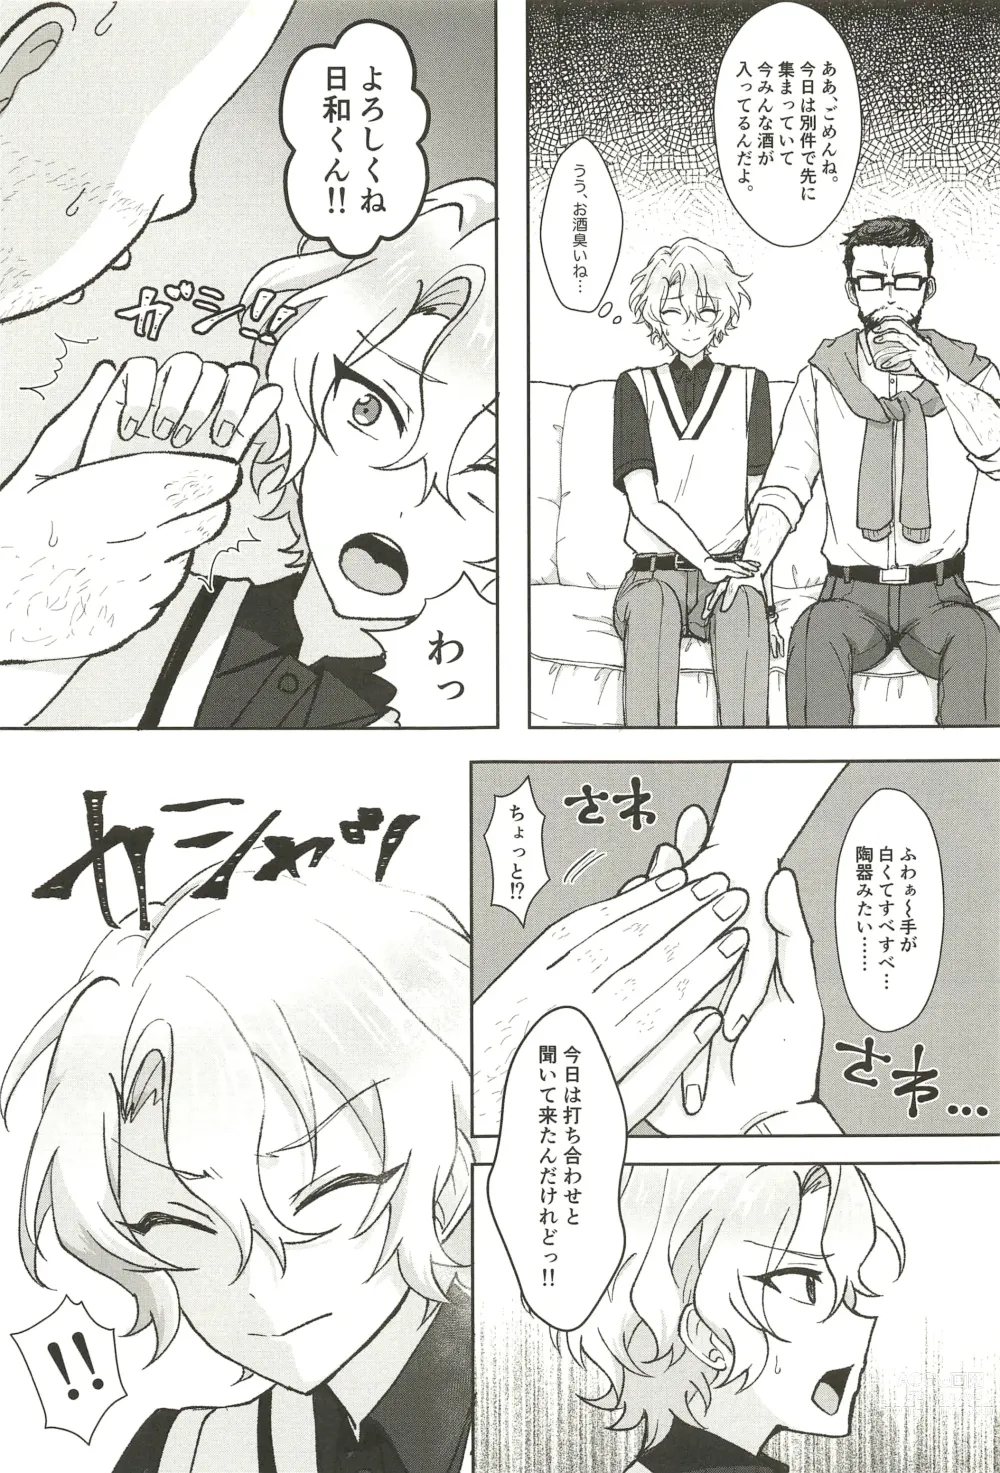 Page 7 of doujinshi Ochiru.